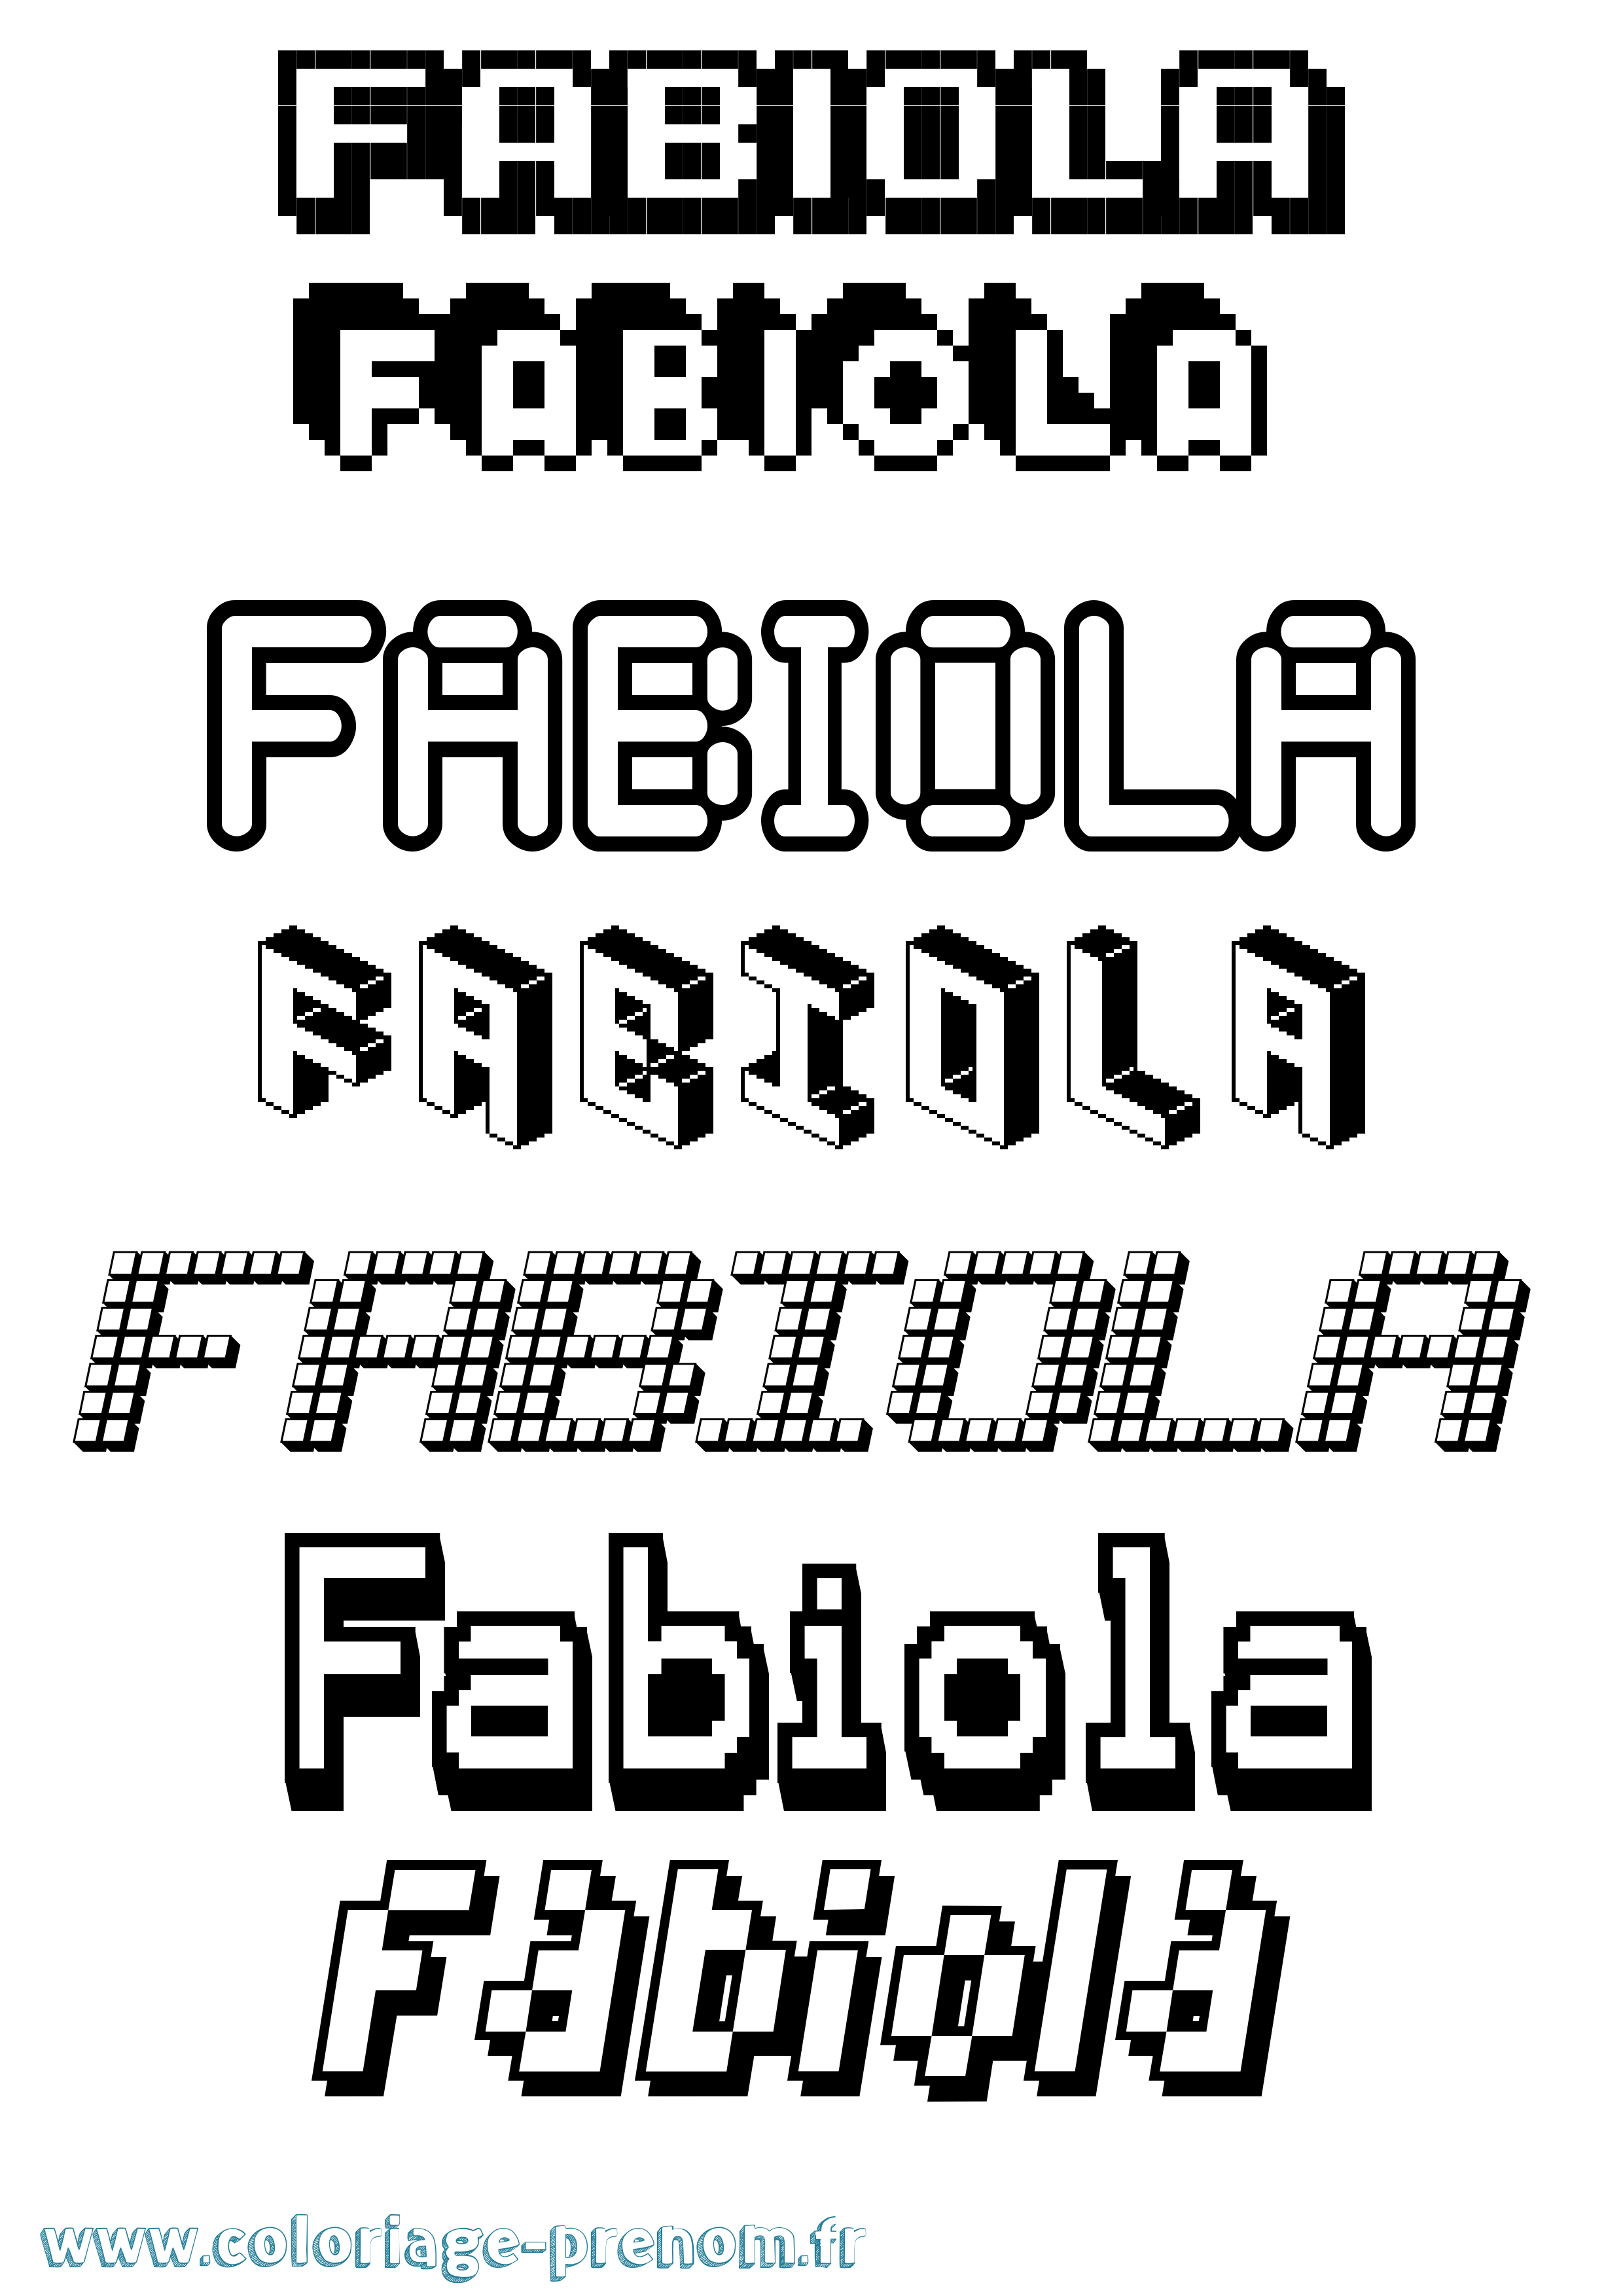 Coloriage prénom Fabiola Pixel